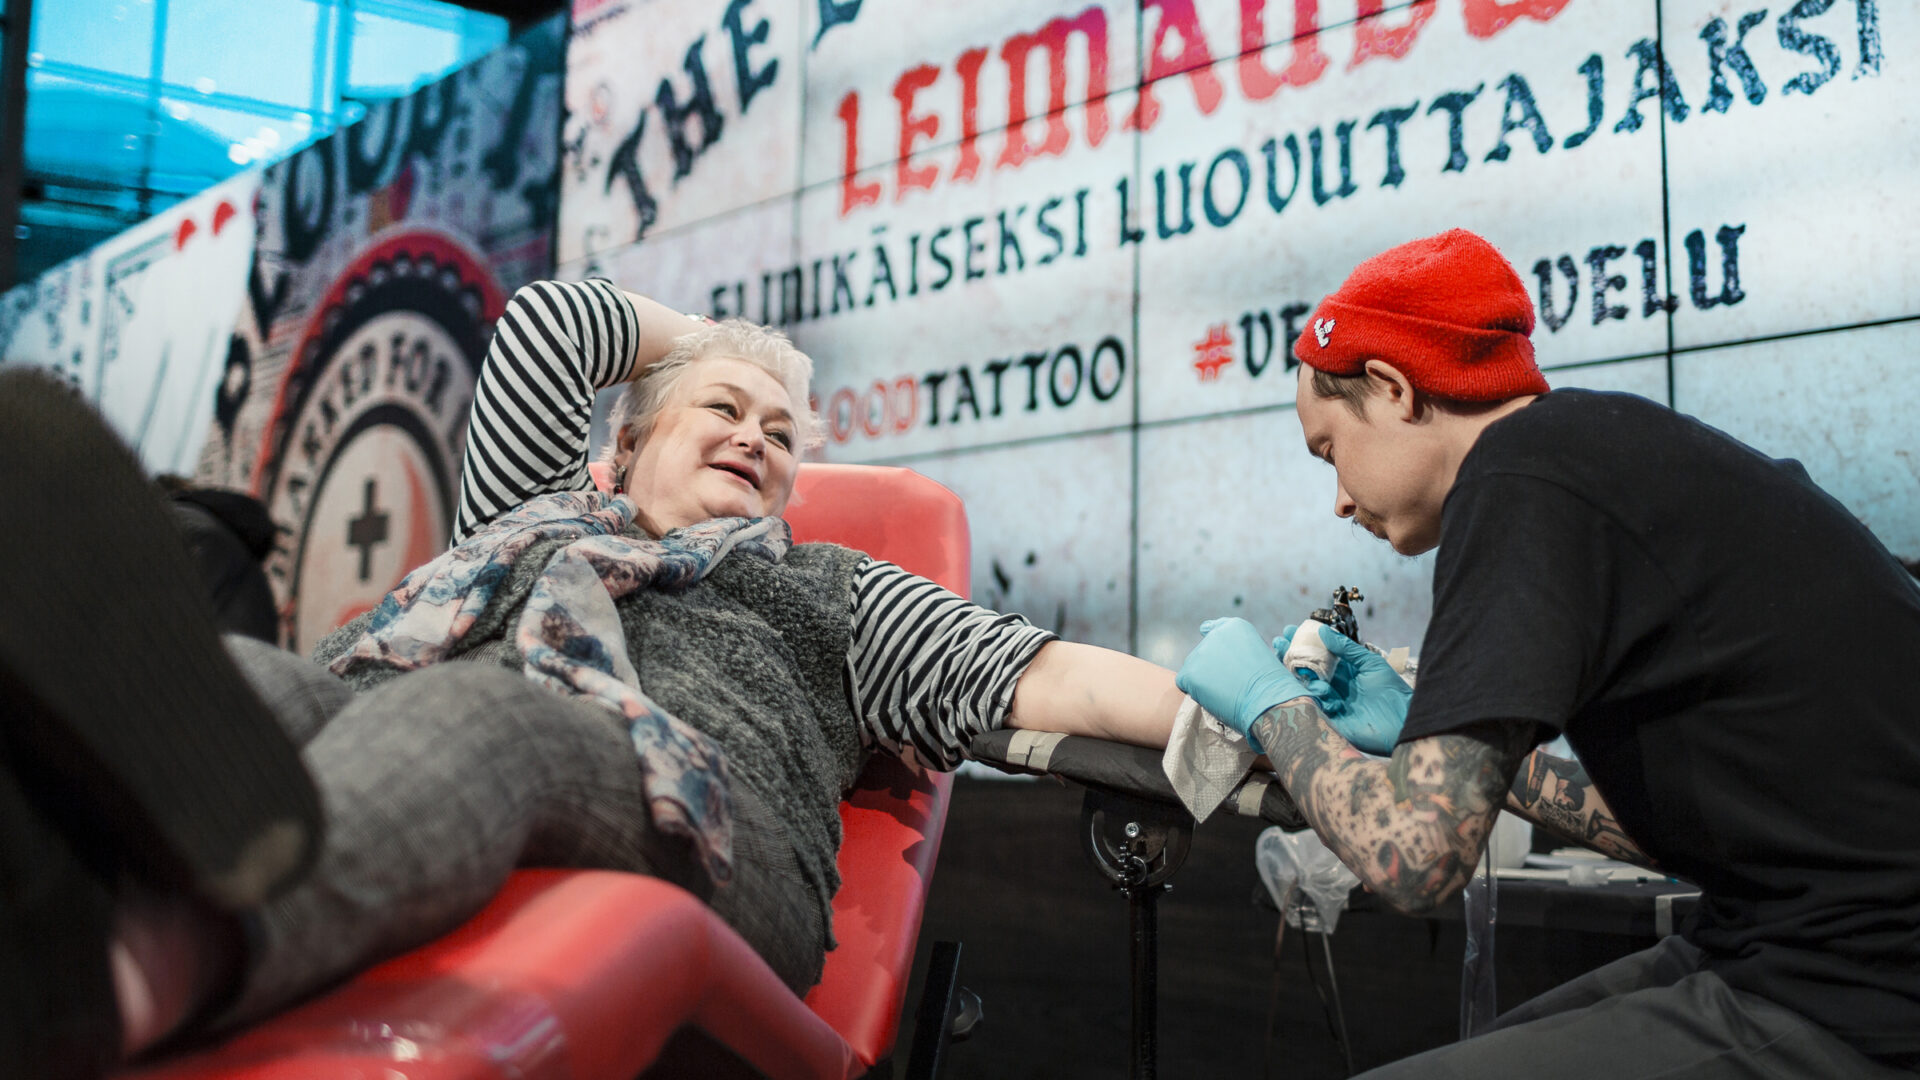 Päivi Syväsalo luovutuspedillä ottamassa tatuointia Blood Tattoo -tapahtumassa.